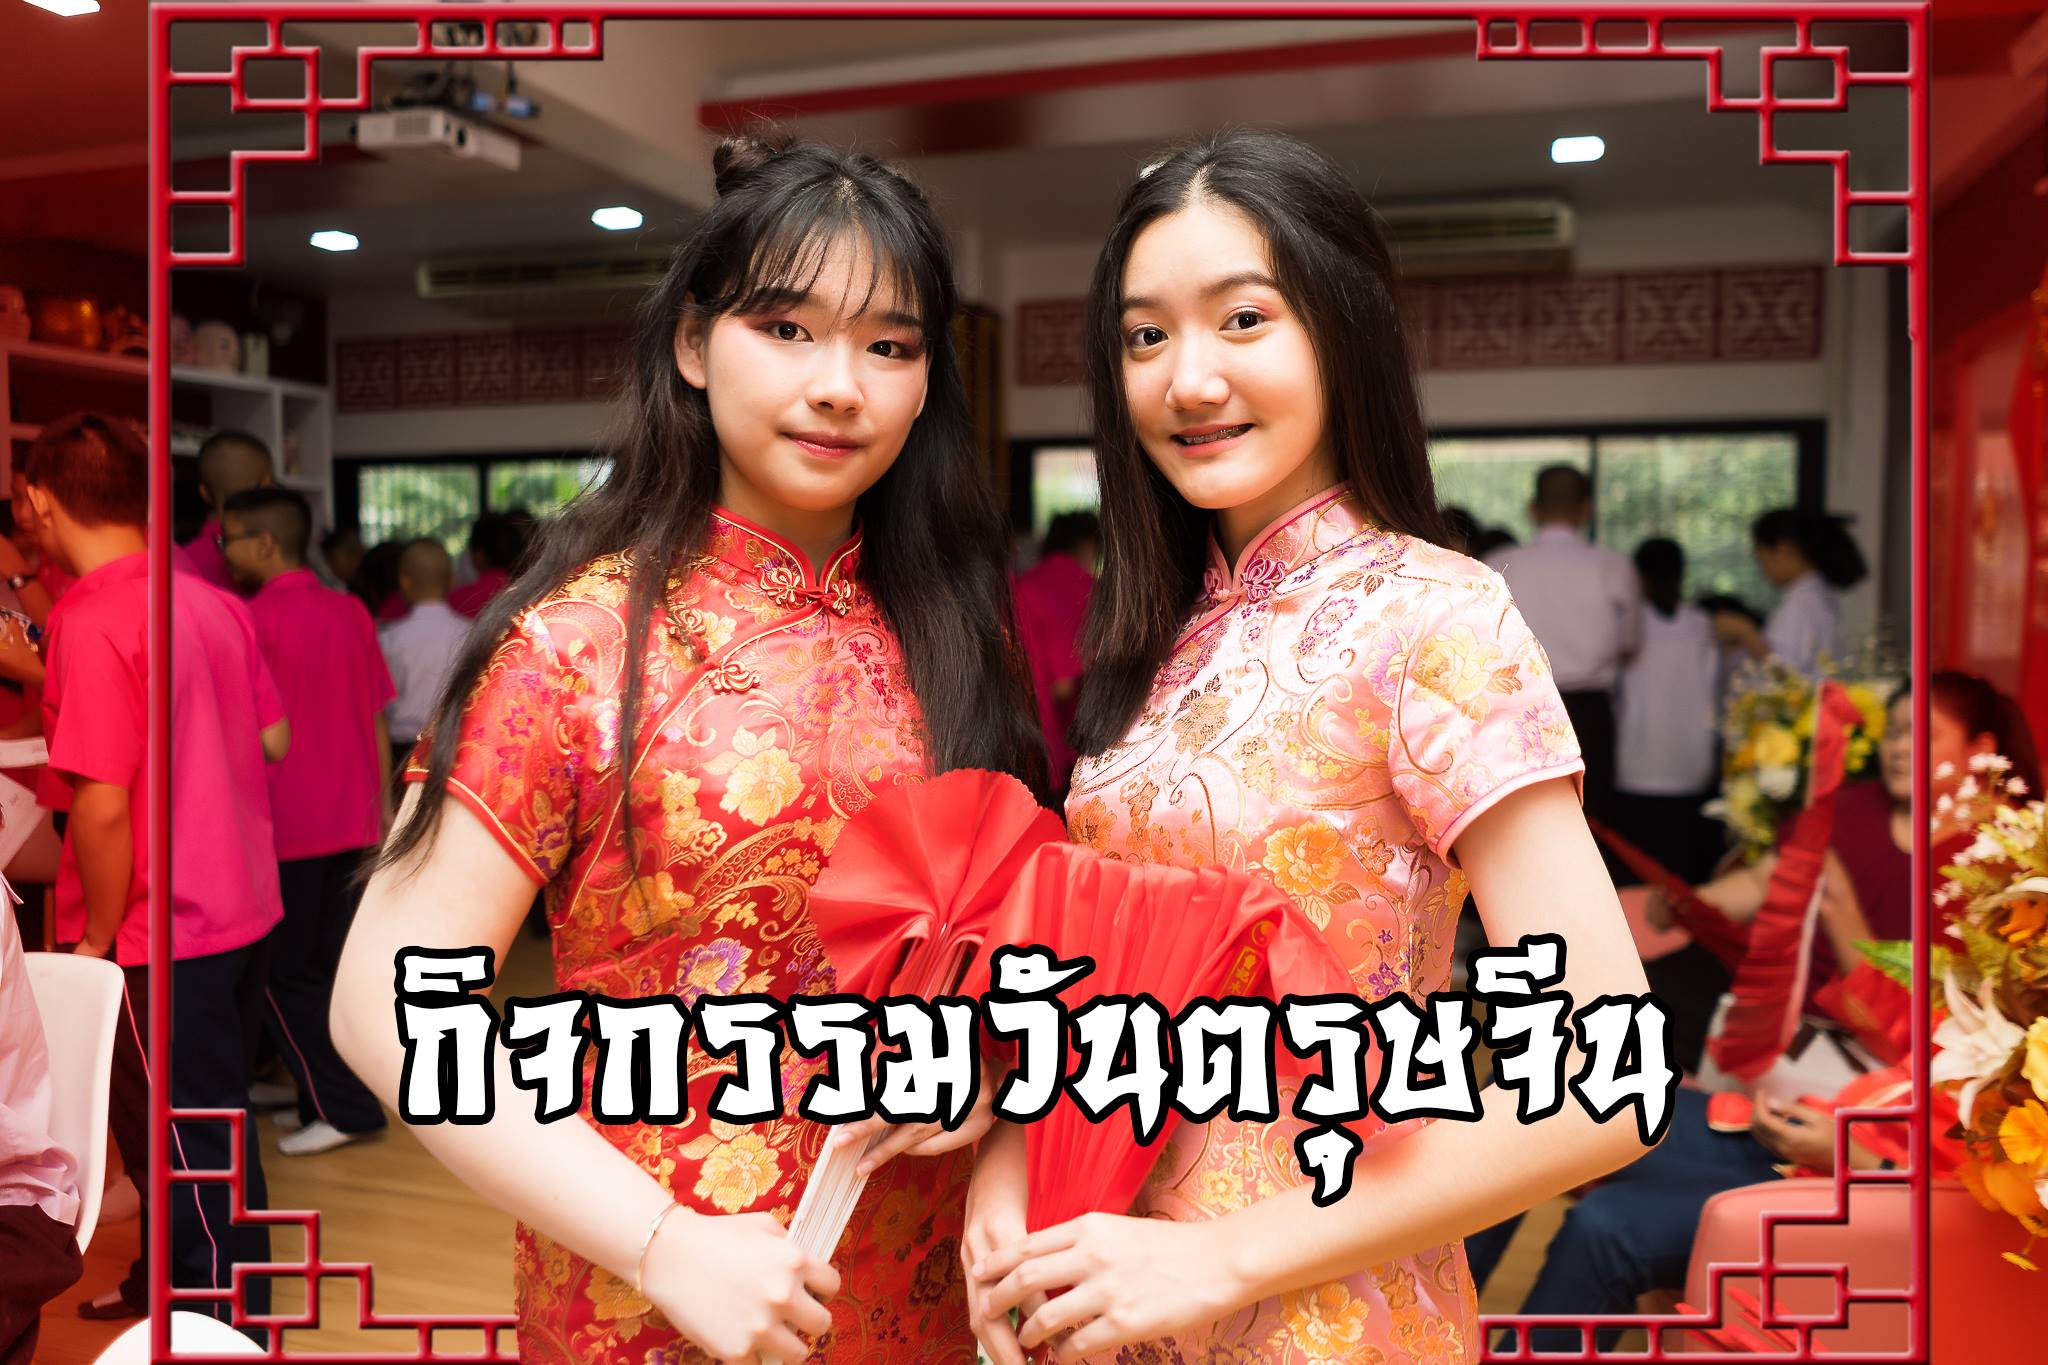 กลุ่มสาระการเรียนรู้ภาษาต่างประเทศ โรงเรียนมัธยมวัดนายโรง จัดกิจกรรม Happy Chinese New Year